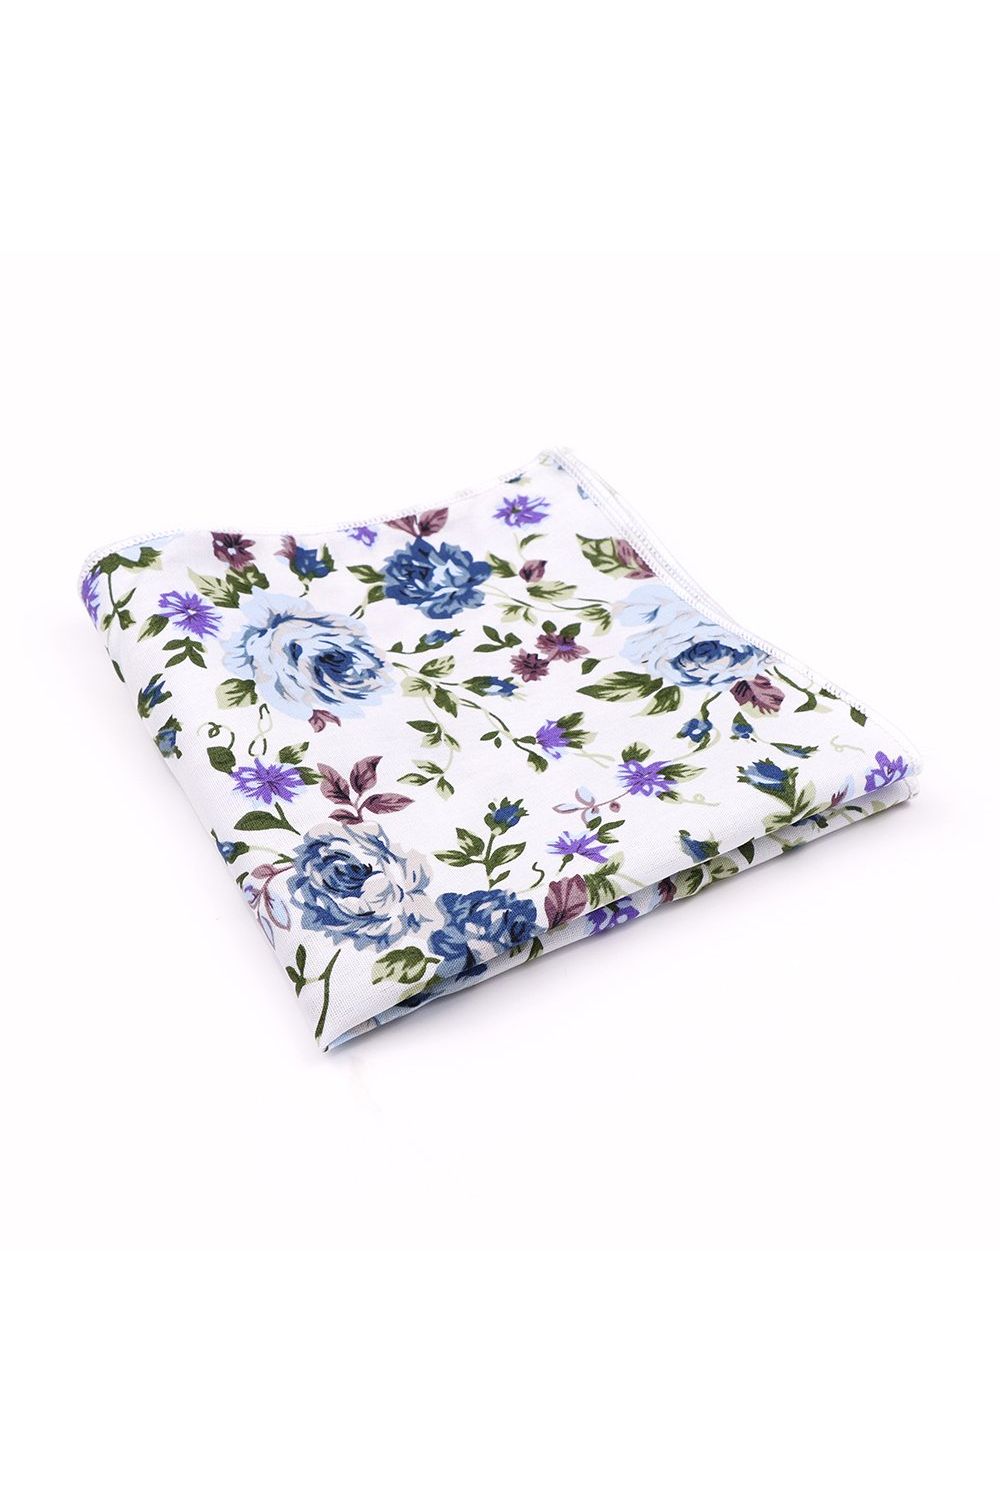 Blue floral cotton classic mens tie & pocket square set